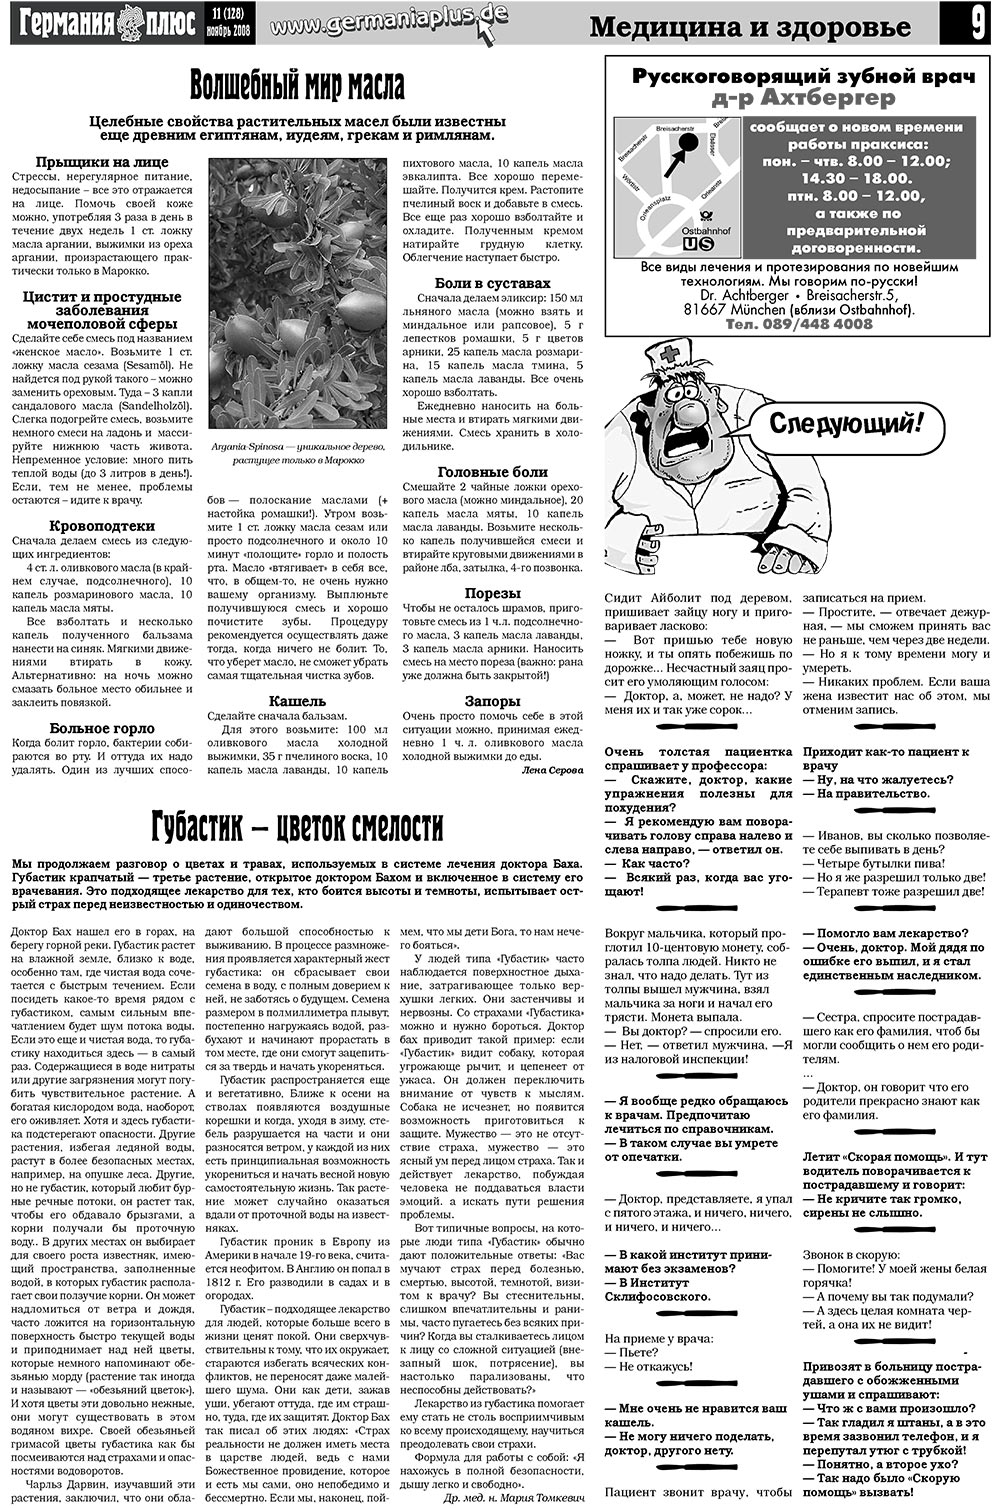 Германия плюс, газета. 2008 №11 стр.11